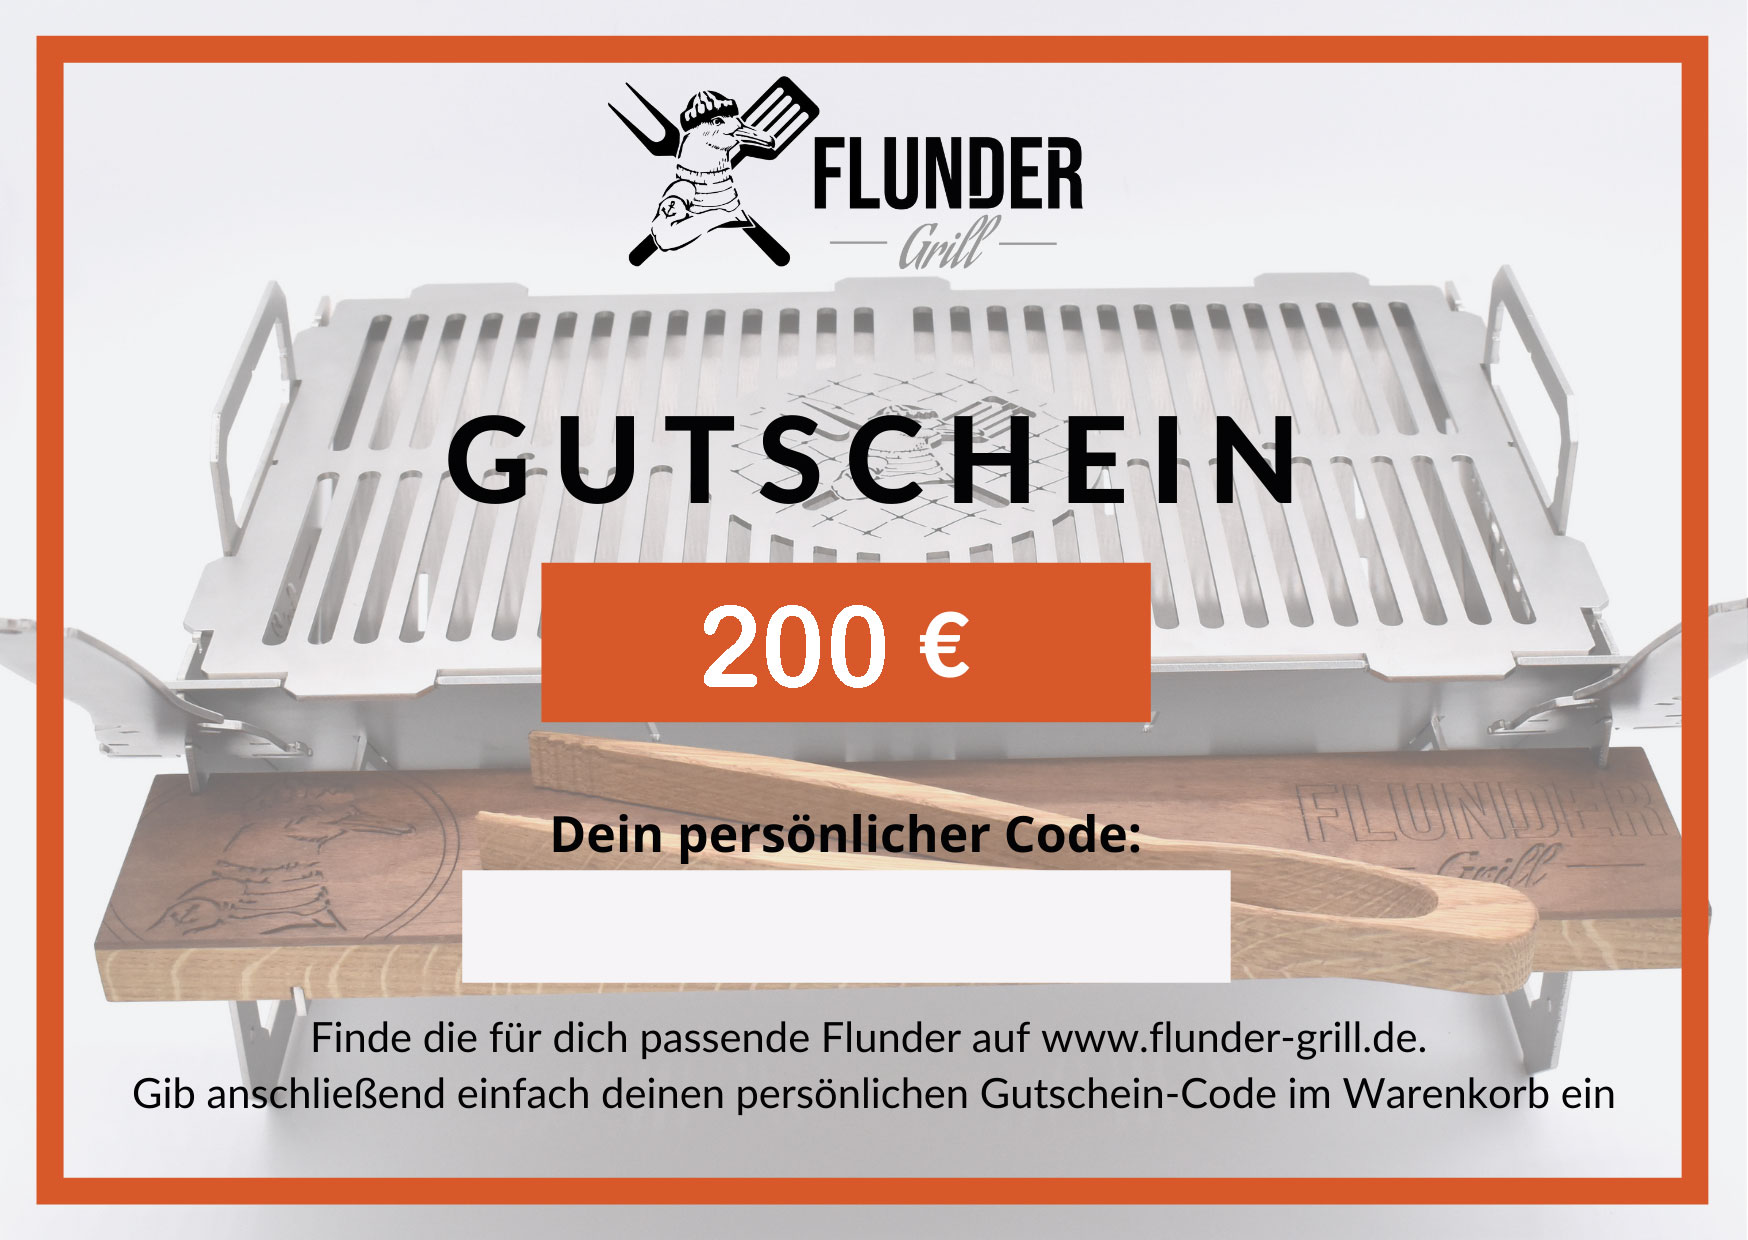 Flunder-Grill Geschenkgutschein 200 Euro